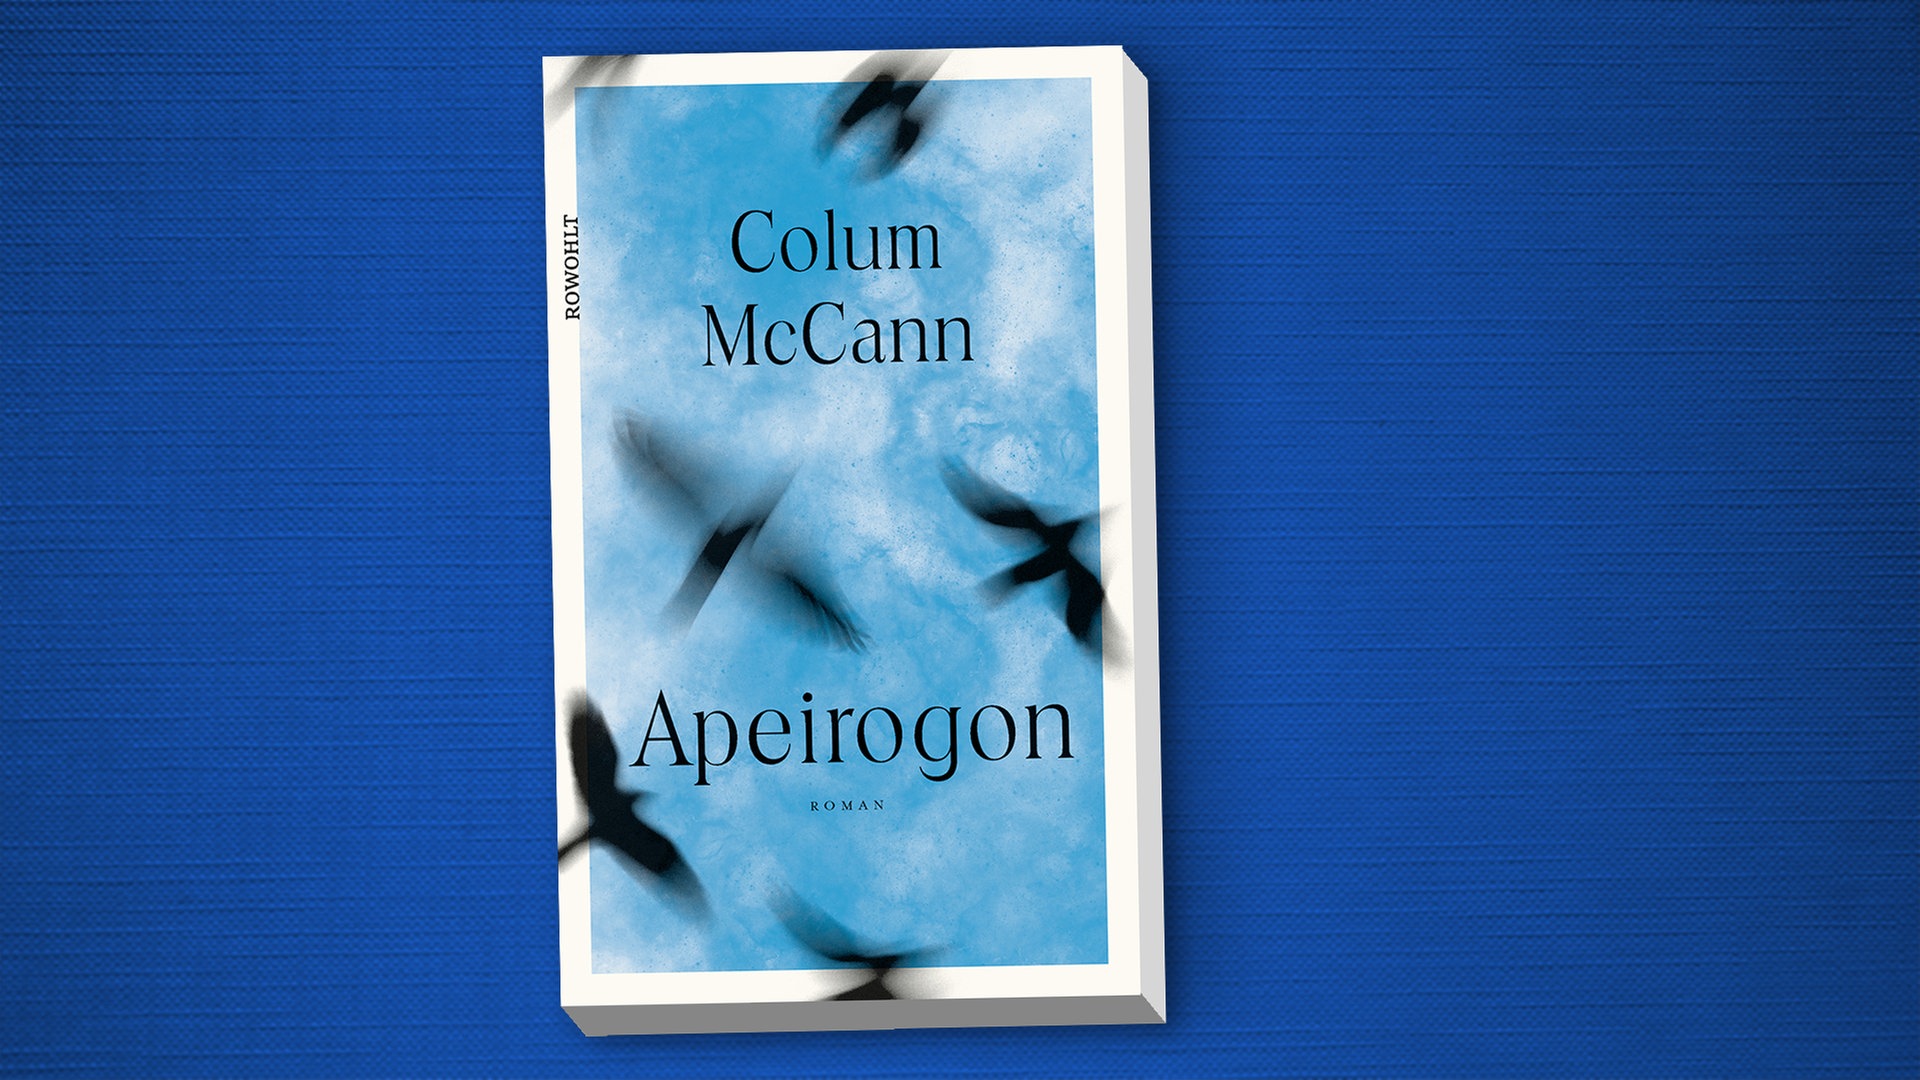 الغلاف الإنكليزي  لرواية "أبيروجون" ["مُضَلَّع لا نهائي الأضلاع"] للكاتب الإيرلندي كولوم ماكان.